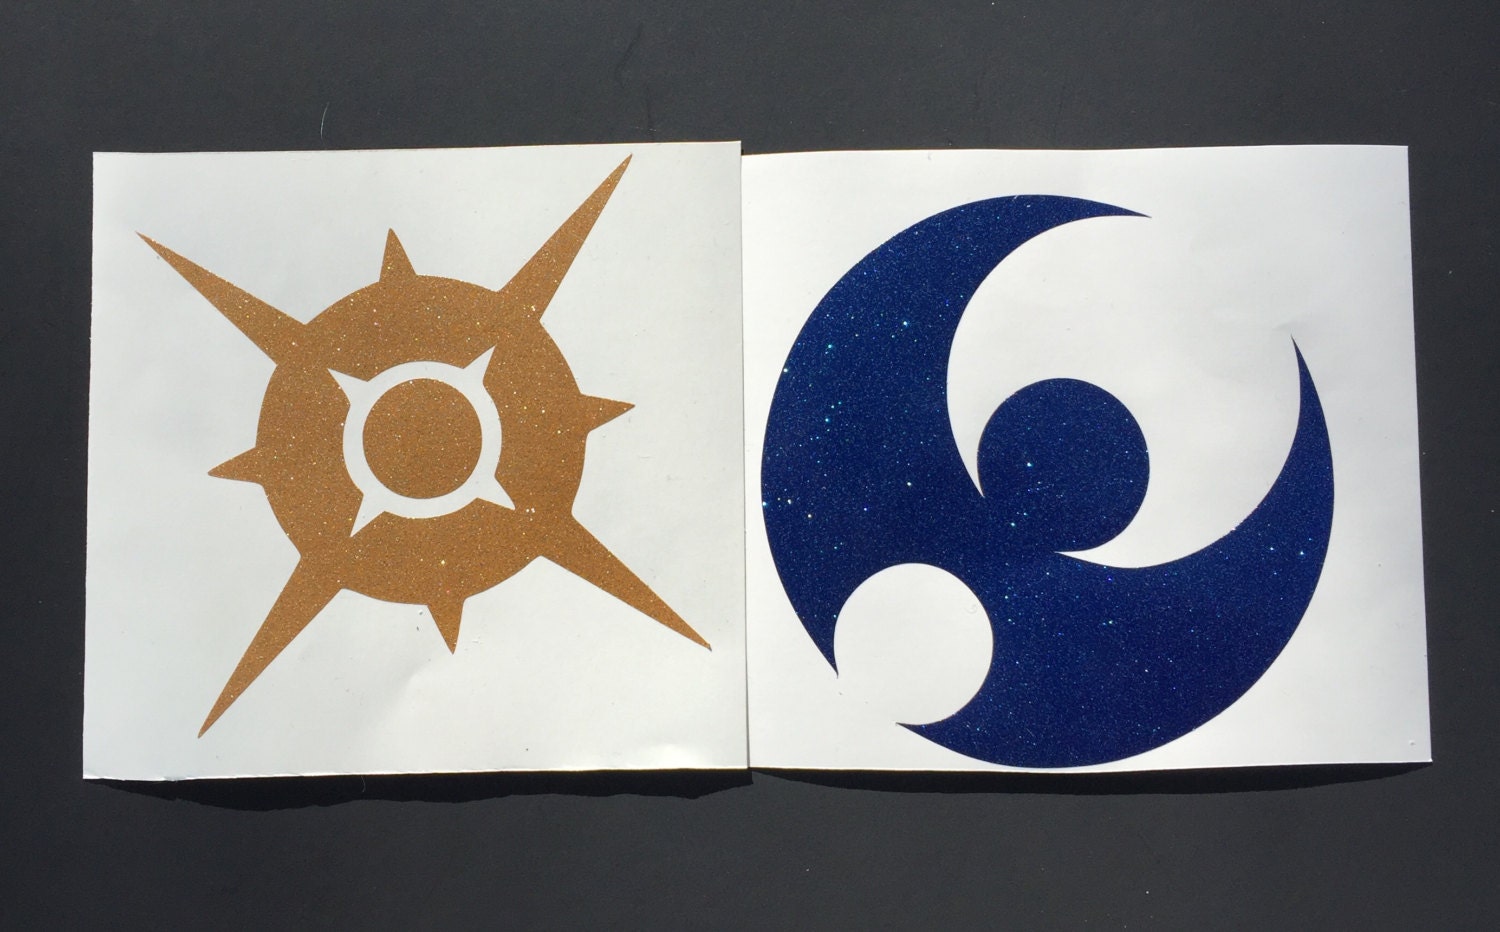 pokemon sun moon logo